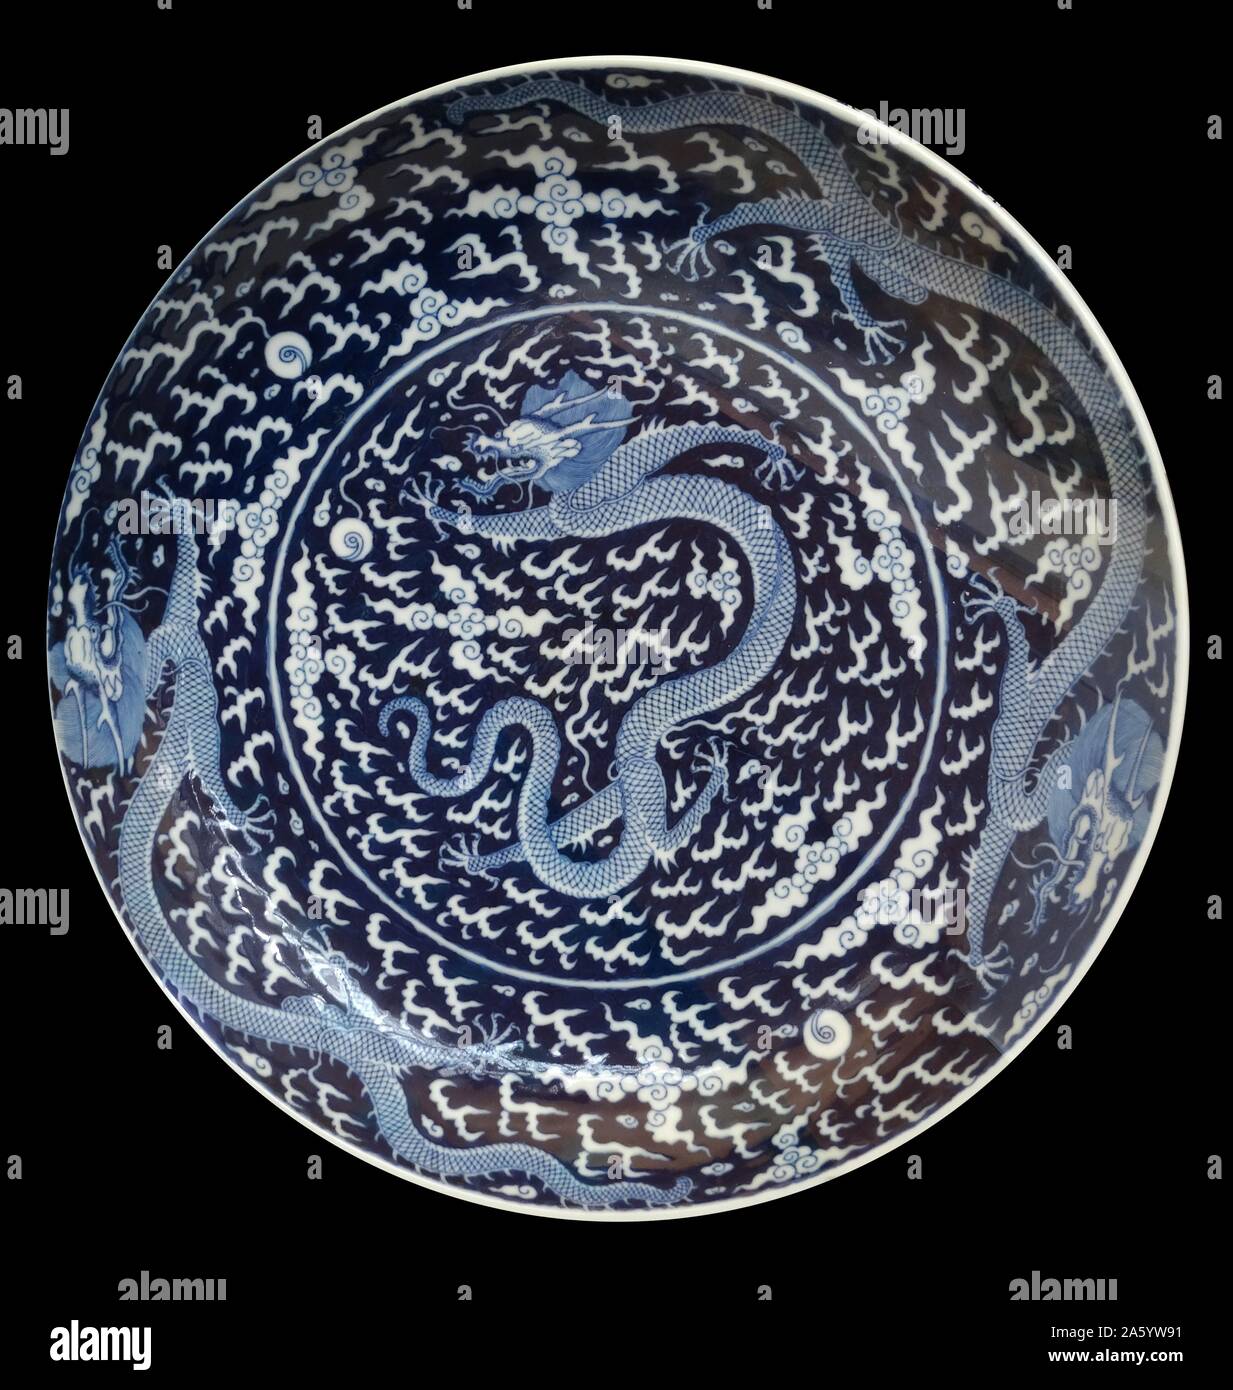 Chargeur de porcelaine bleu et blanc de la dynastie Qing, représentant un dragon. Datée 1875 Banque D'Images